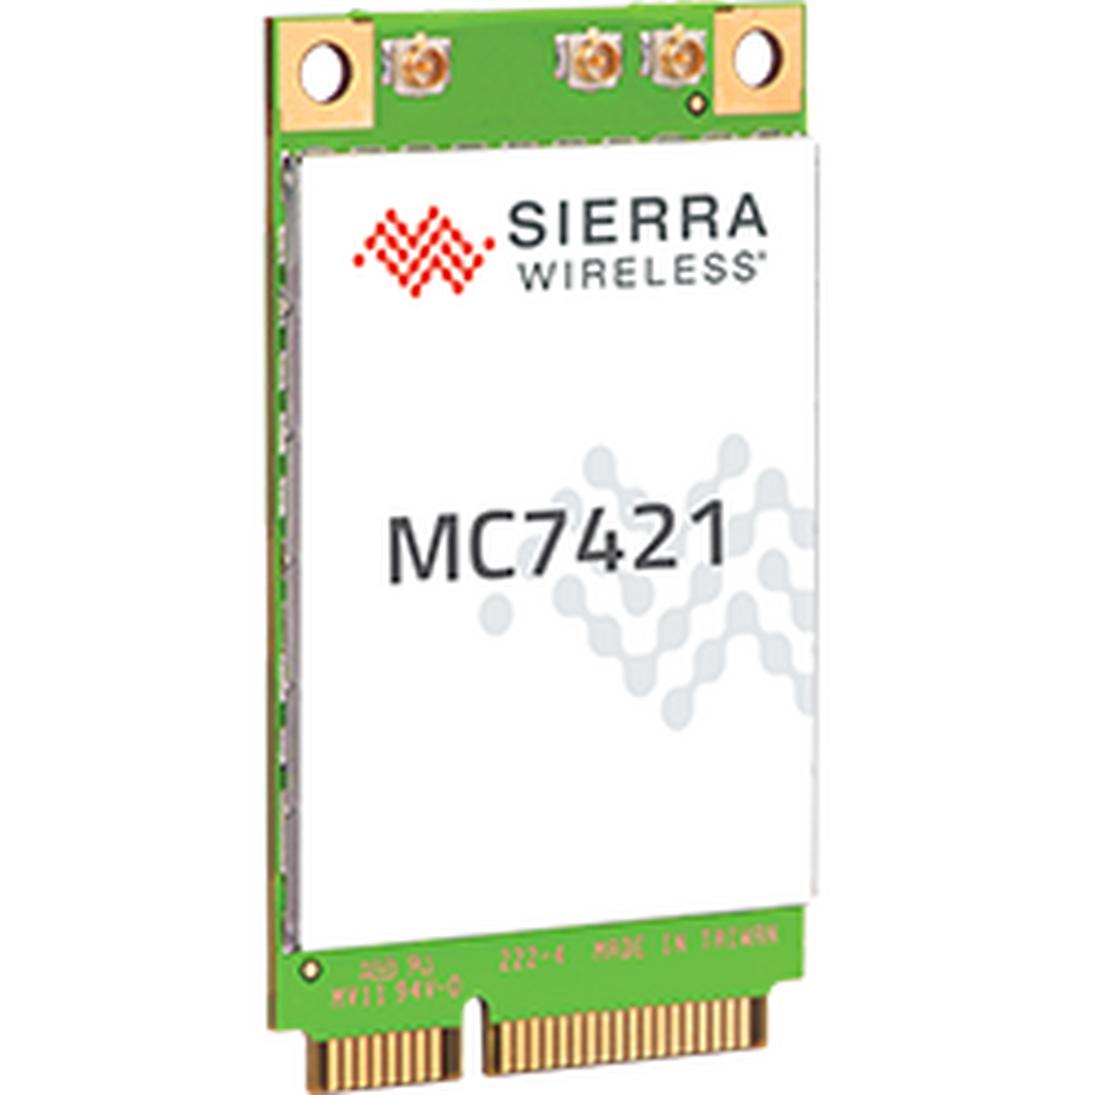 Sierra Wireless MC7421